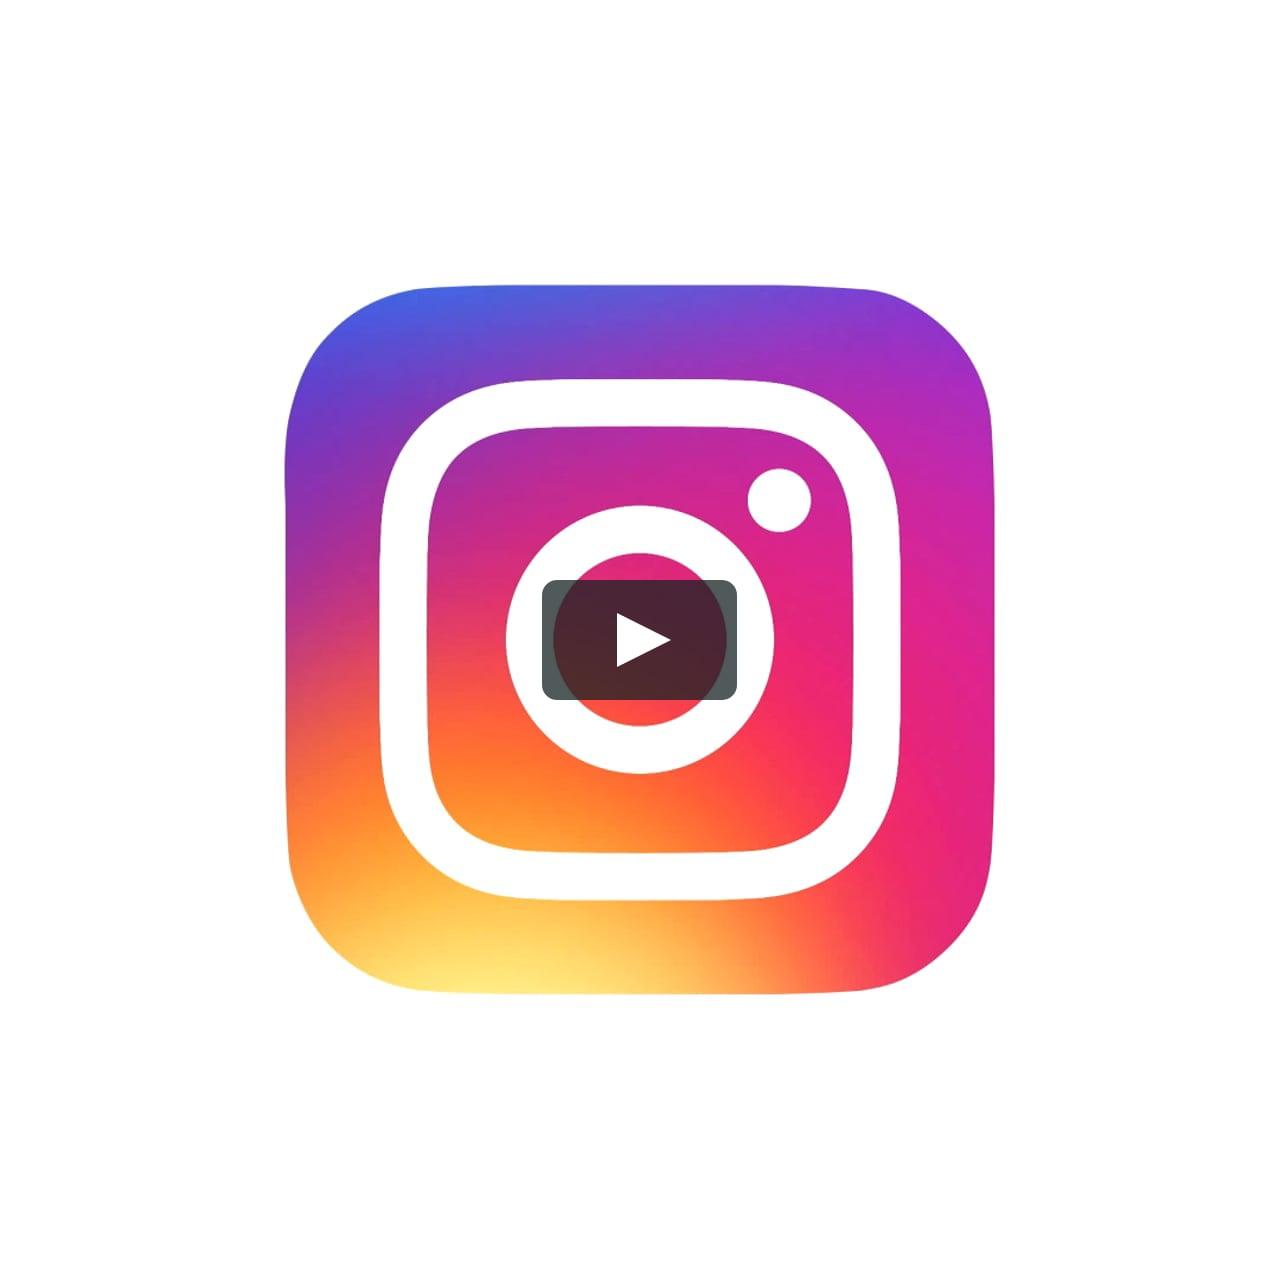 Intstagram Logo - The Evolution of the Instagram Logo